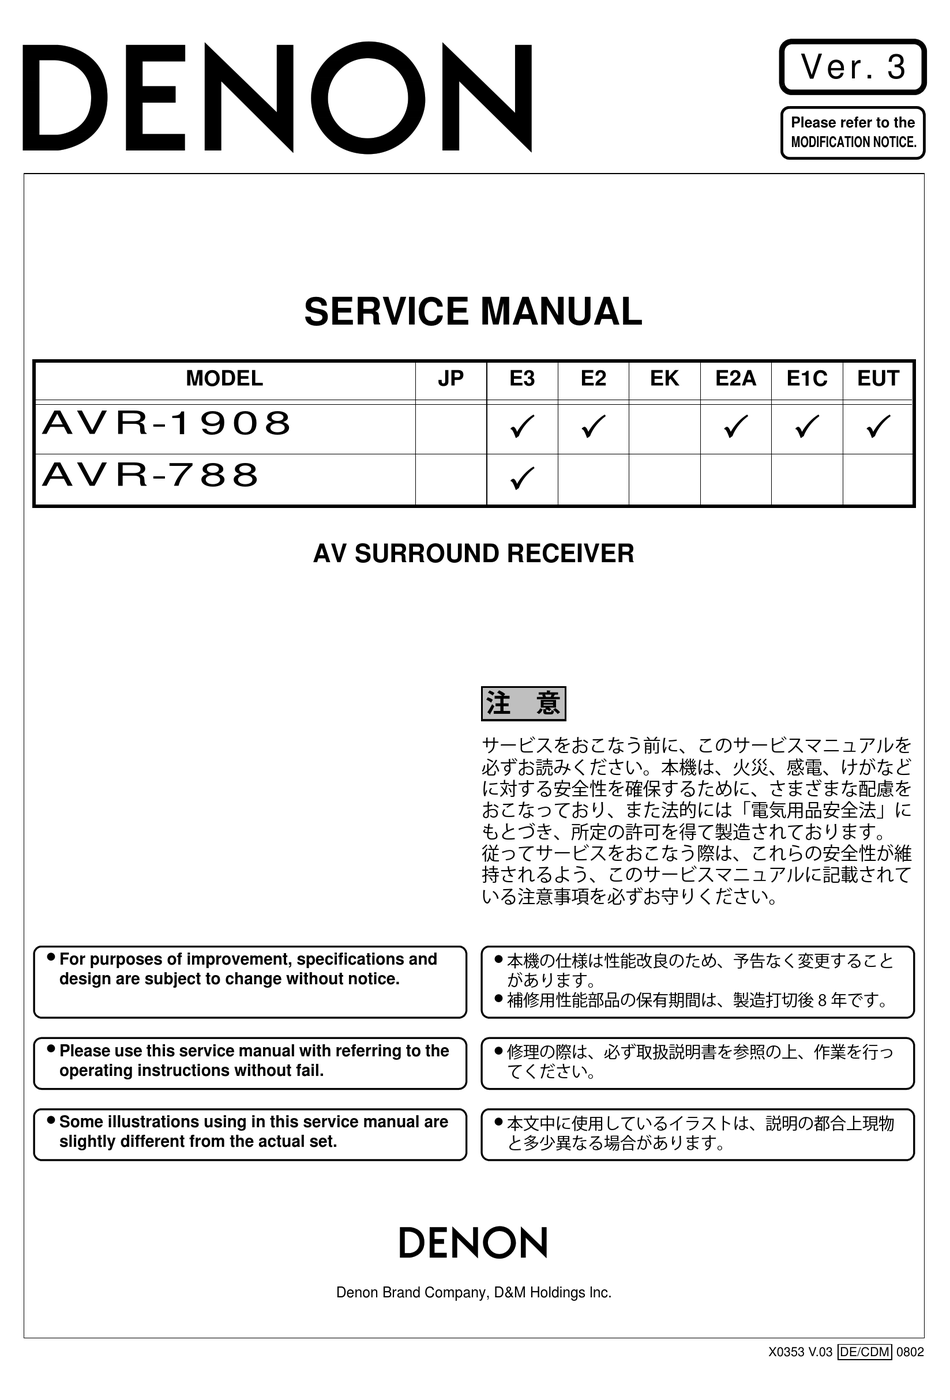 Bedienungsanleitung-Operating Instructions für Denon AVR-1908 